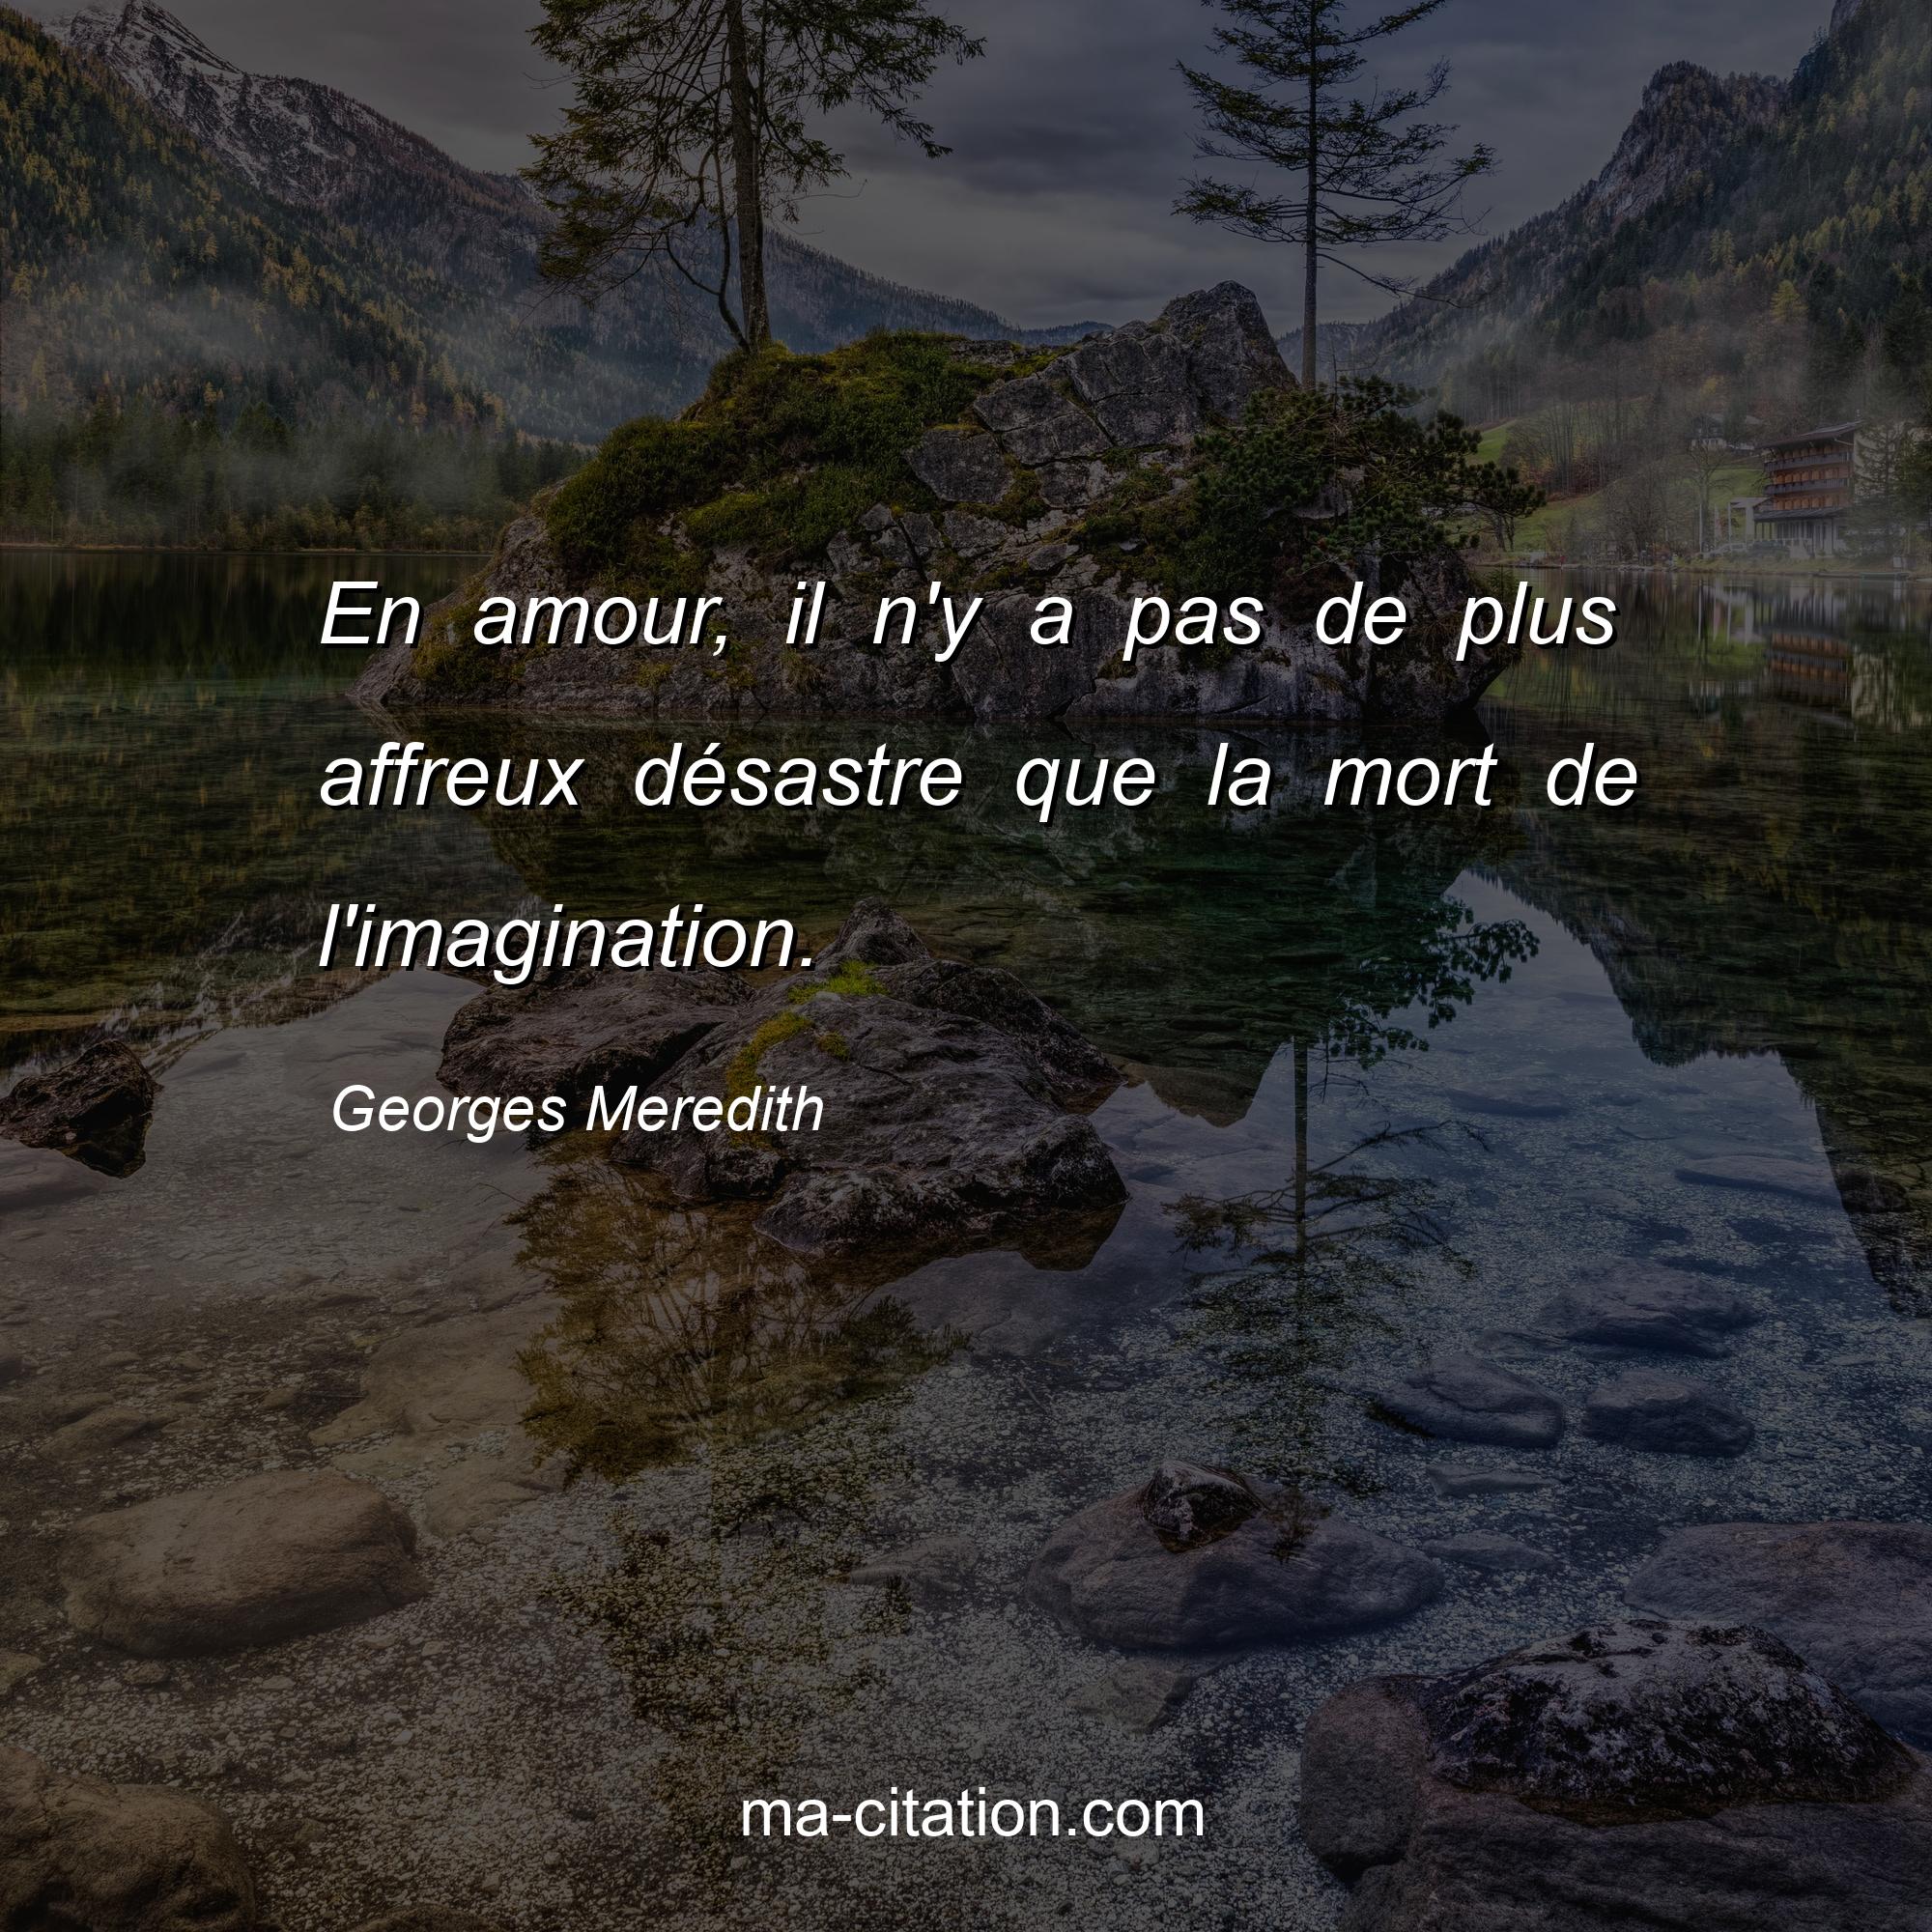 Georges Meredith : En amour, il n'y a pas de plus affreux désastre que la mort de l'imagination.